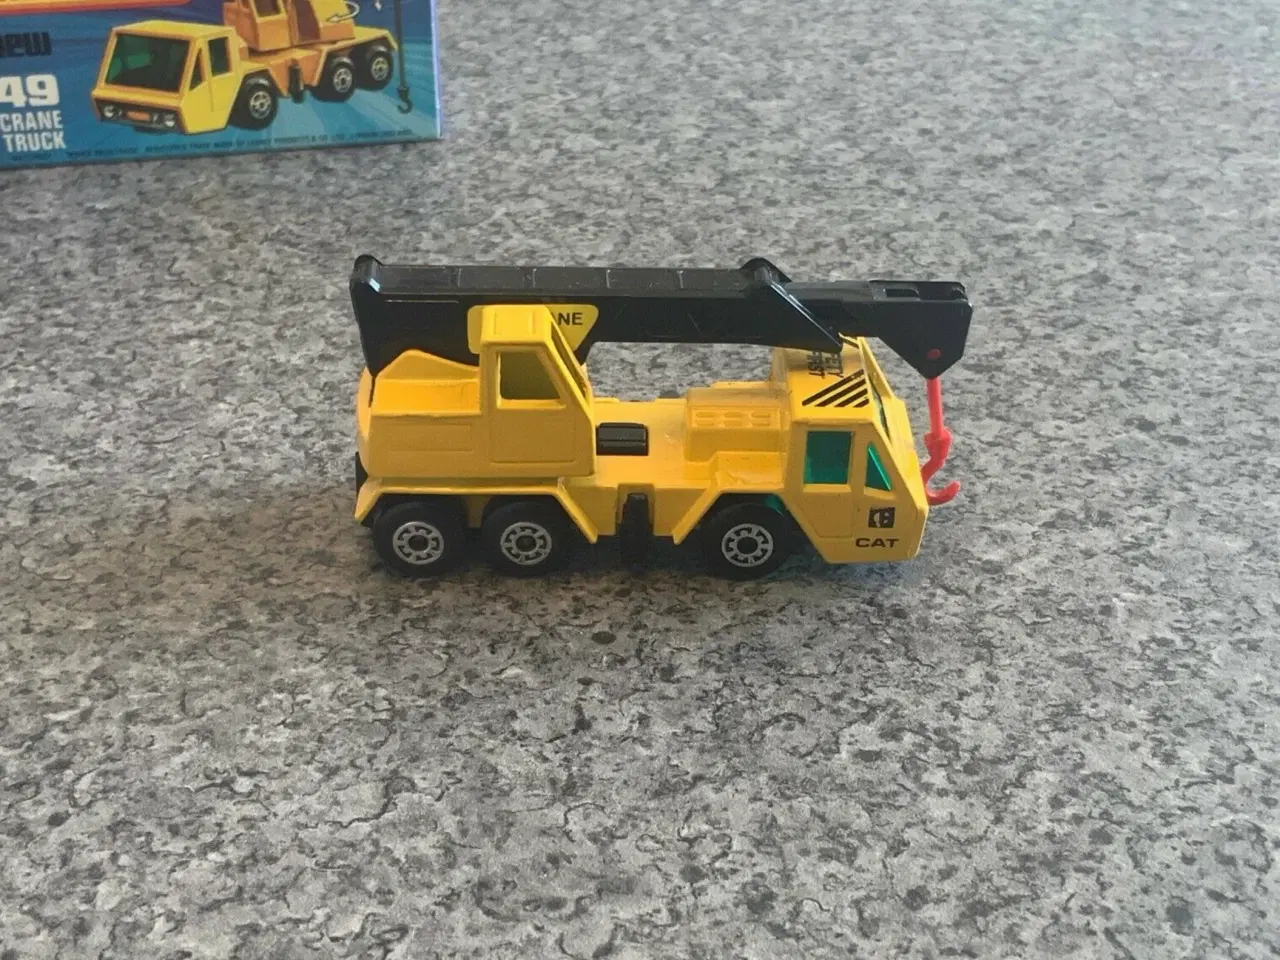 Billede 4 - Matchbox No. 49 Crane Truck, scale 1:66